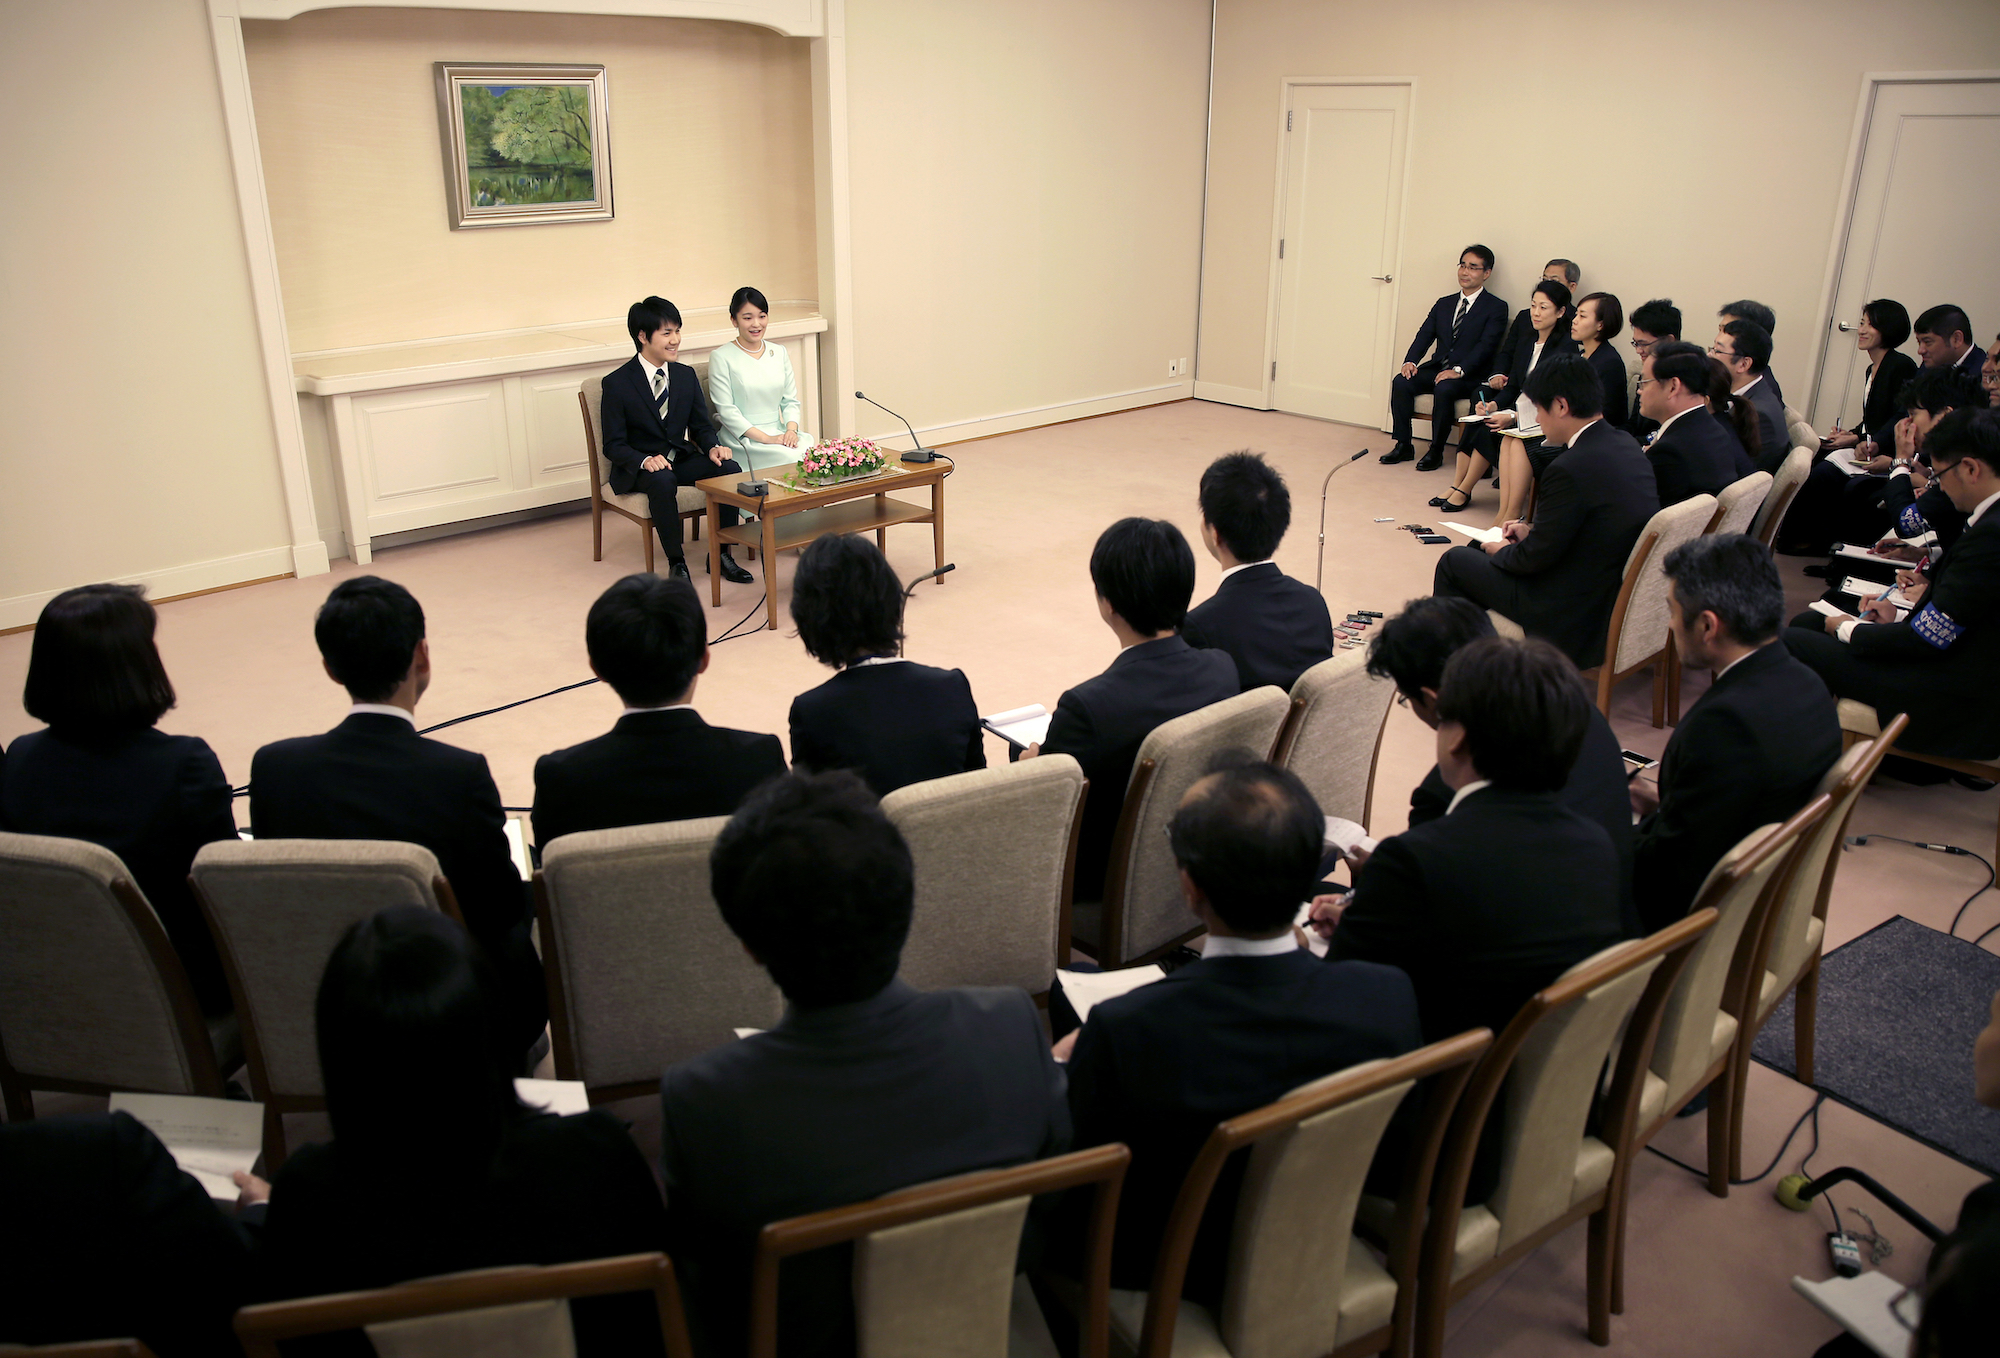 La princesa Mako de Japón, anunció oficialmente su compromiso con el plebeyo Kei Komuro